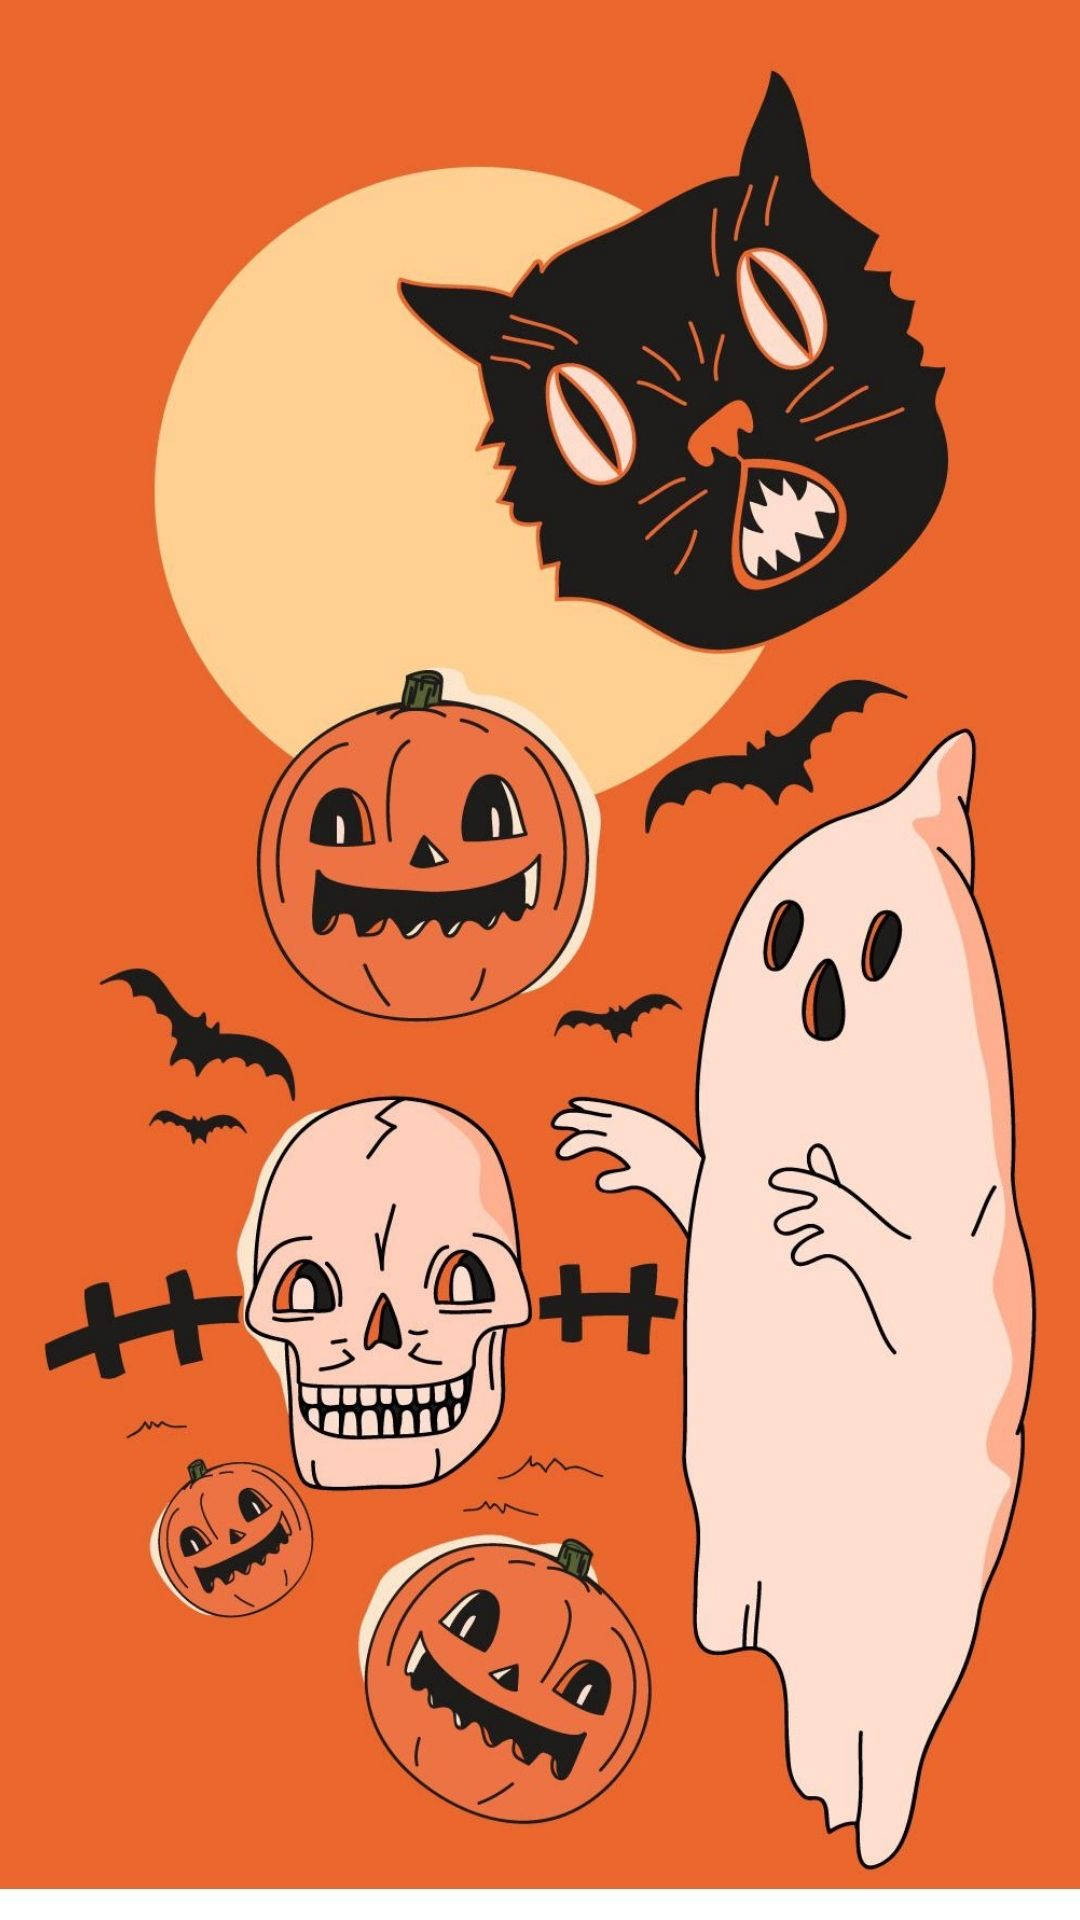 Floating Cartoon Halloween Figures Background